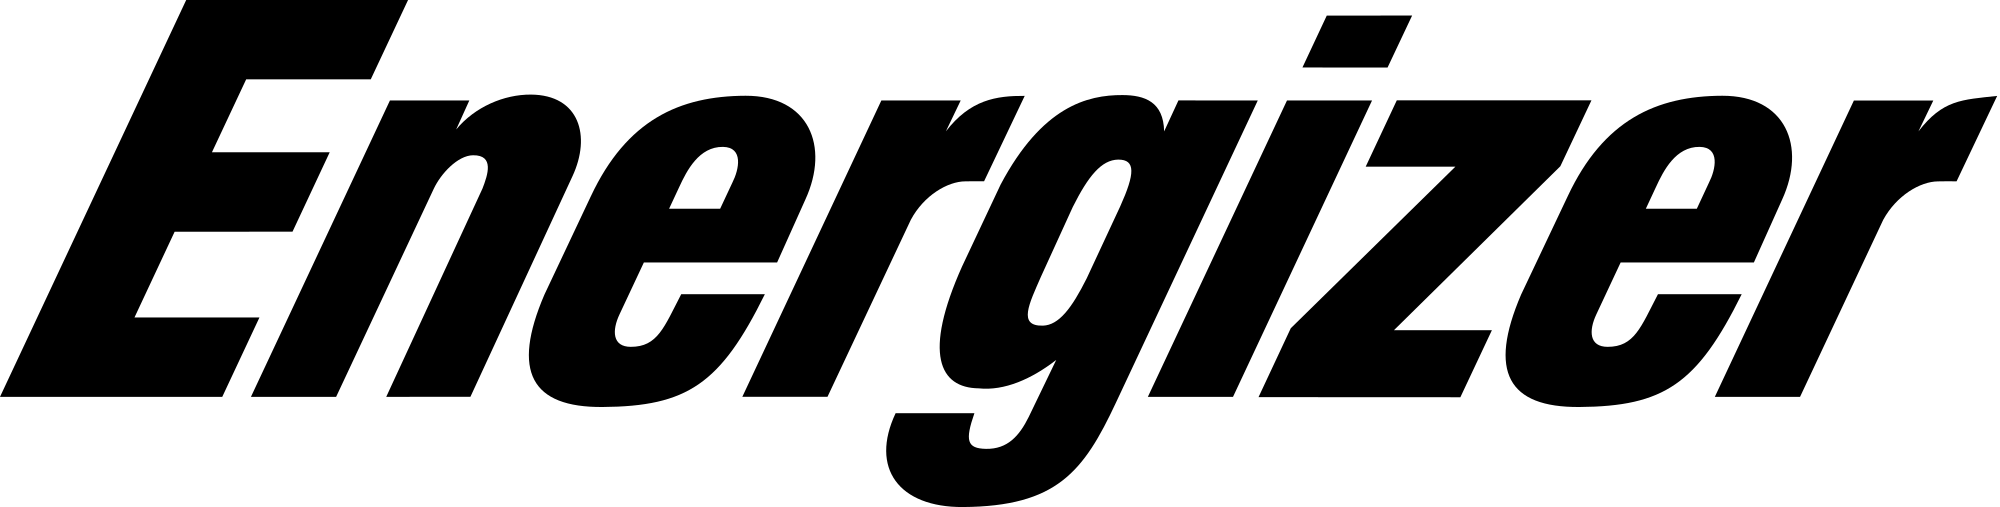 Energizer White Logo